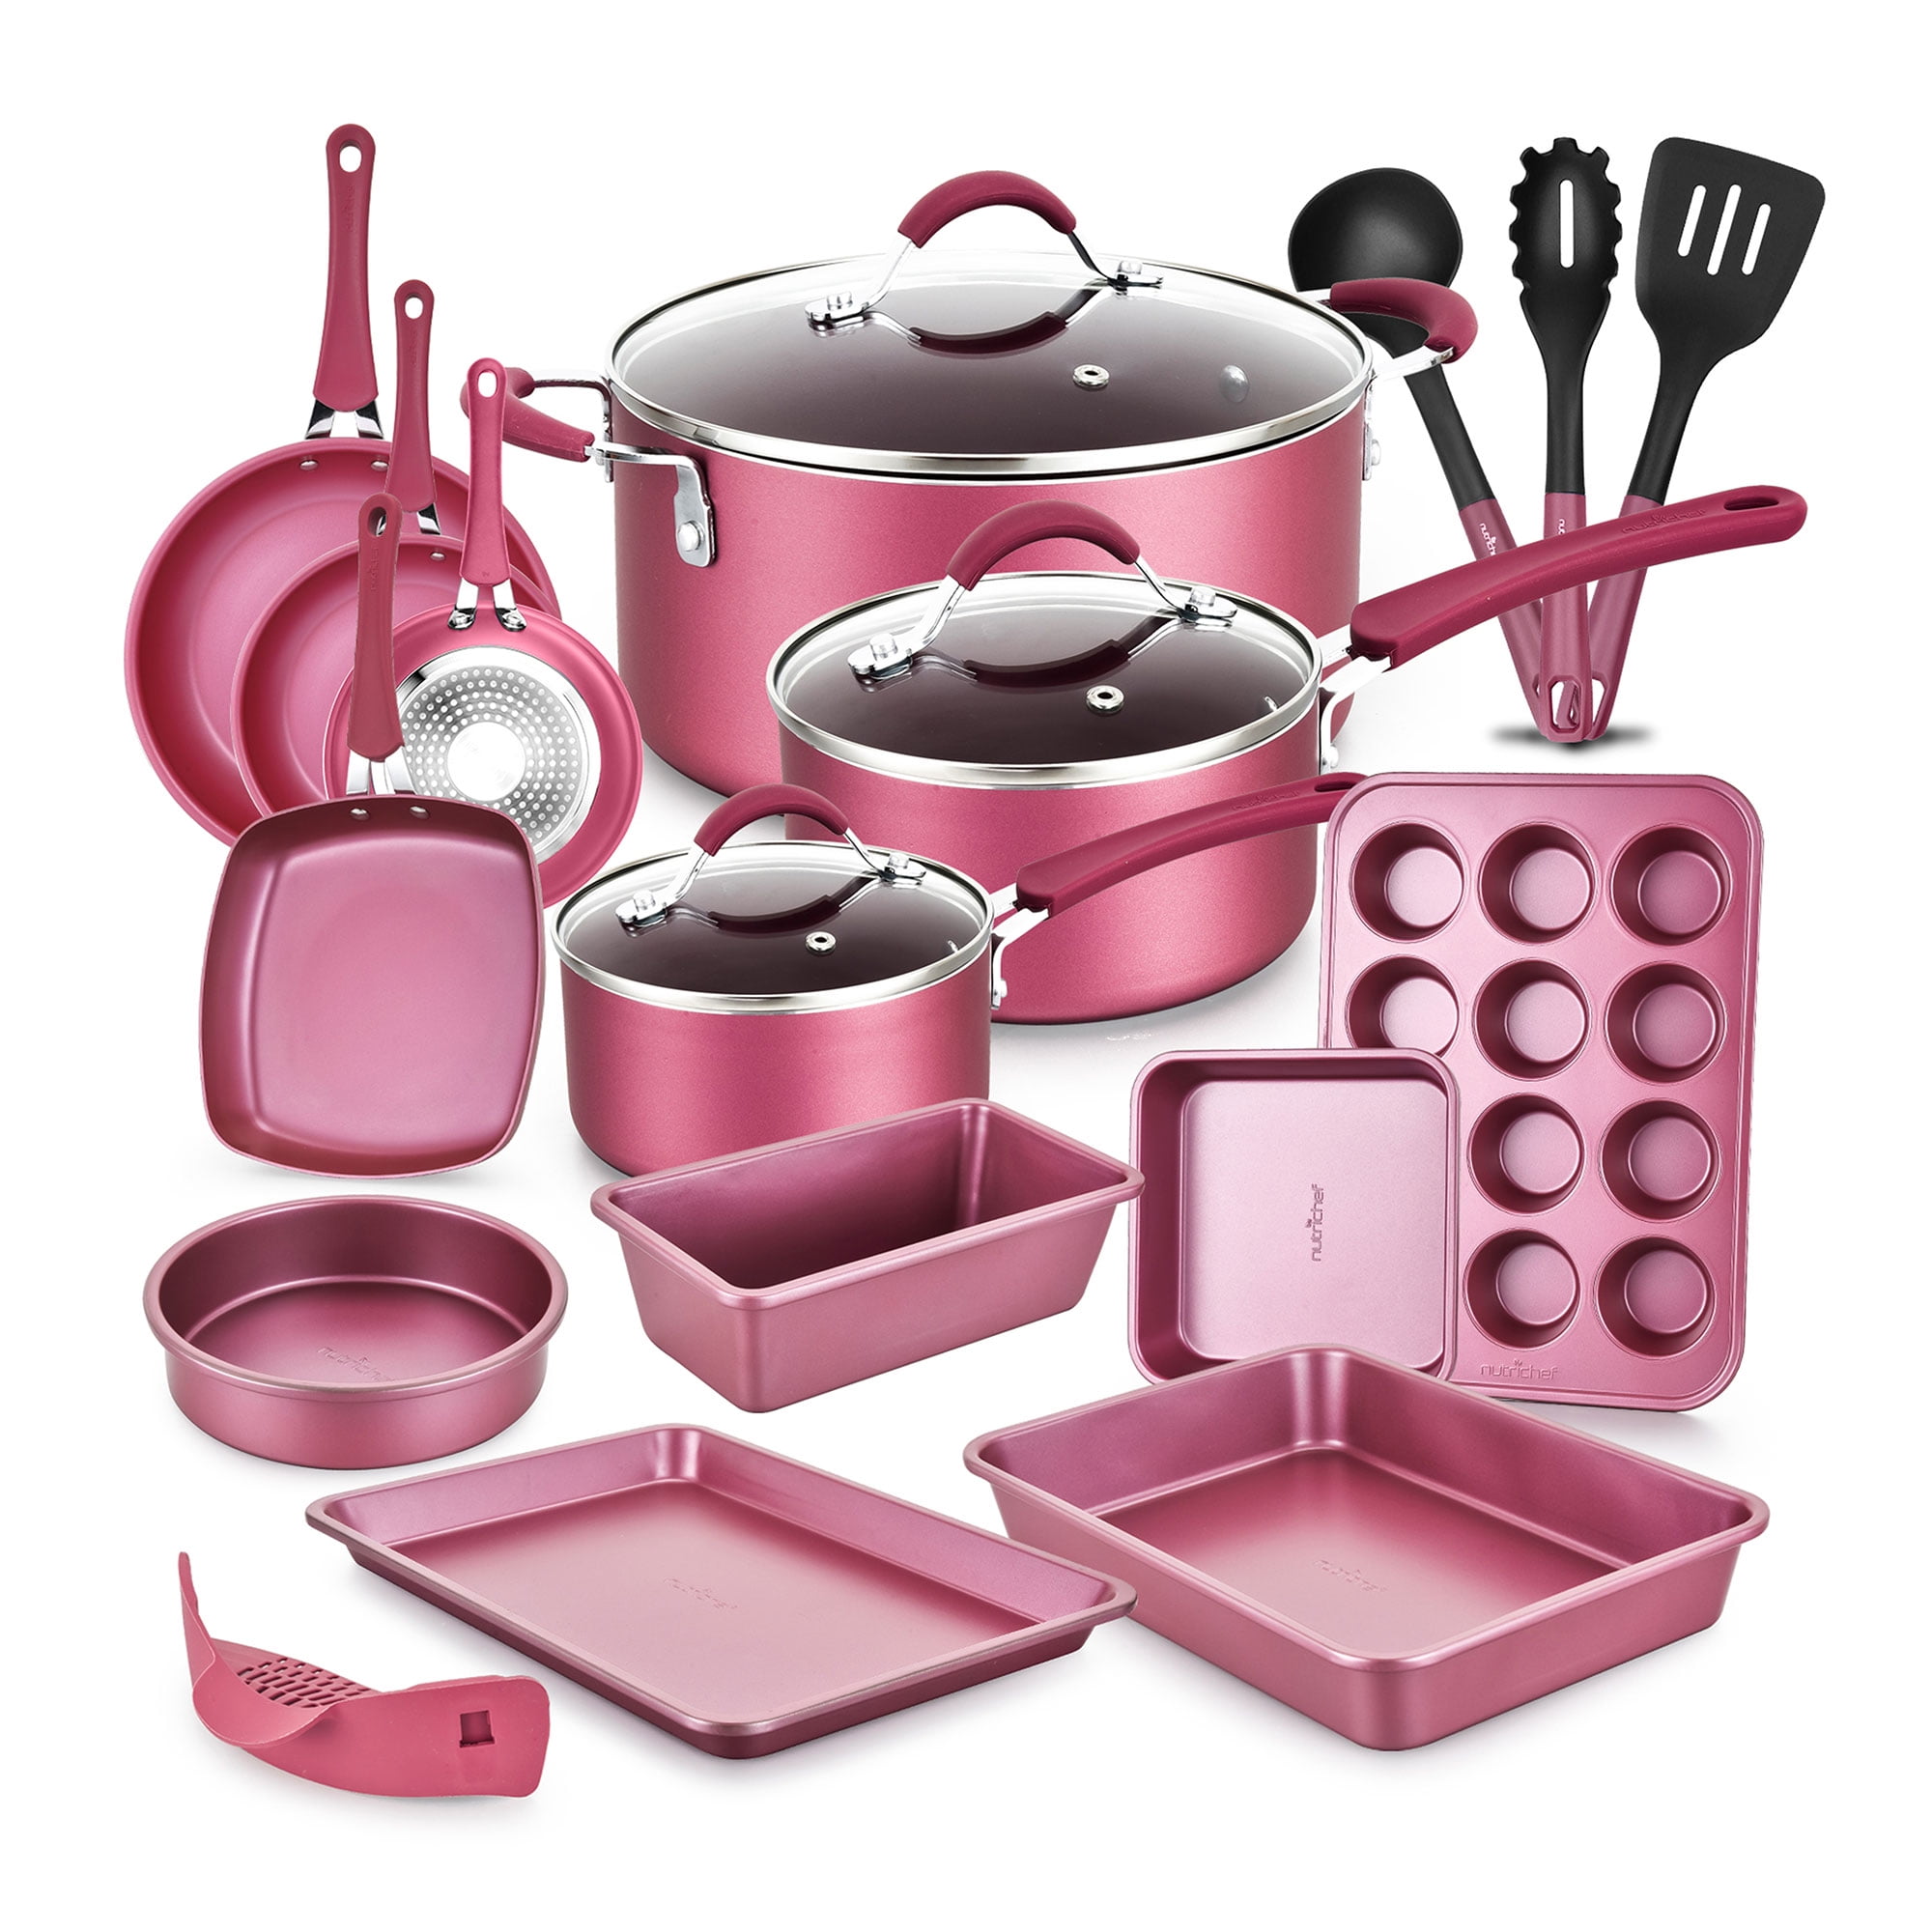 Nutrichef 11 Piece Nonstick Elegant Diamond Pattern Kitchen Cookware Set, Pink